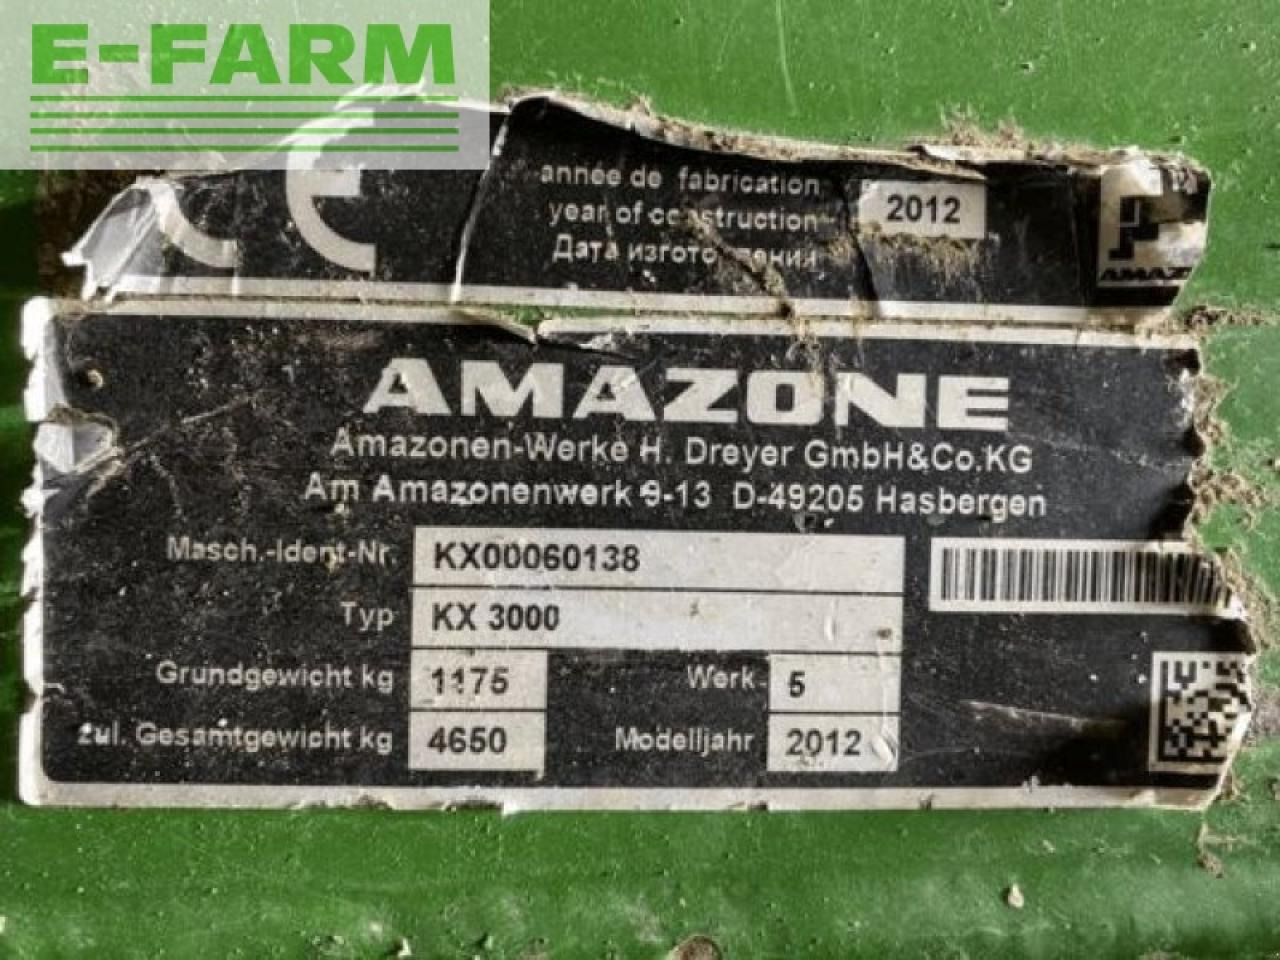 Combiné de semis Amazone ad3000: photos 4